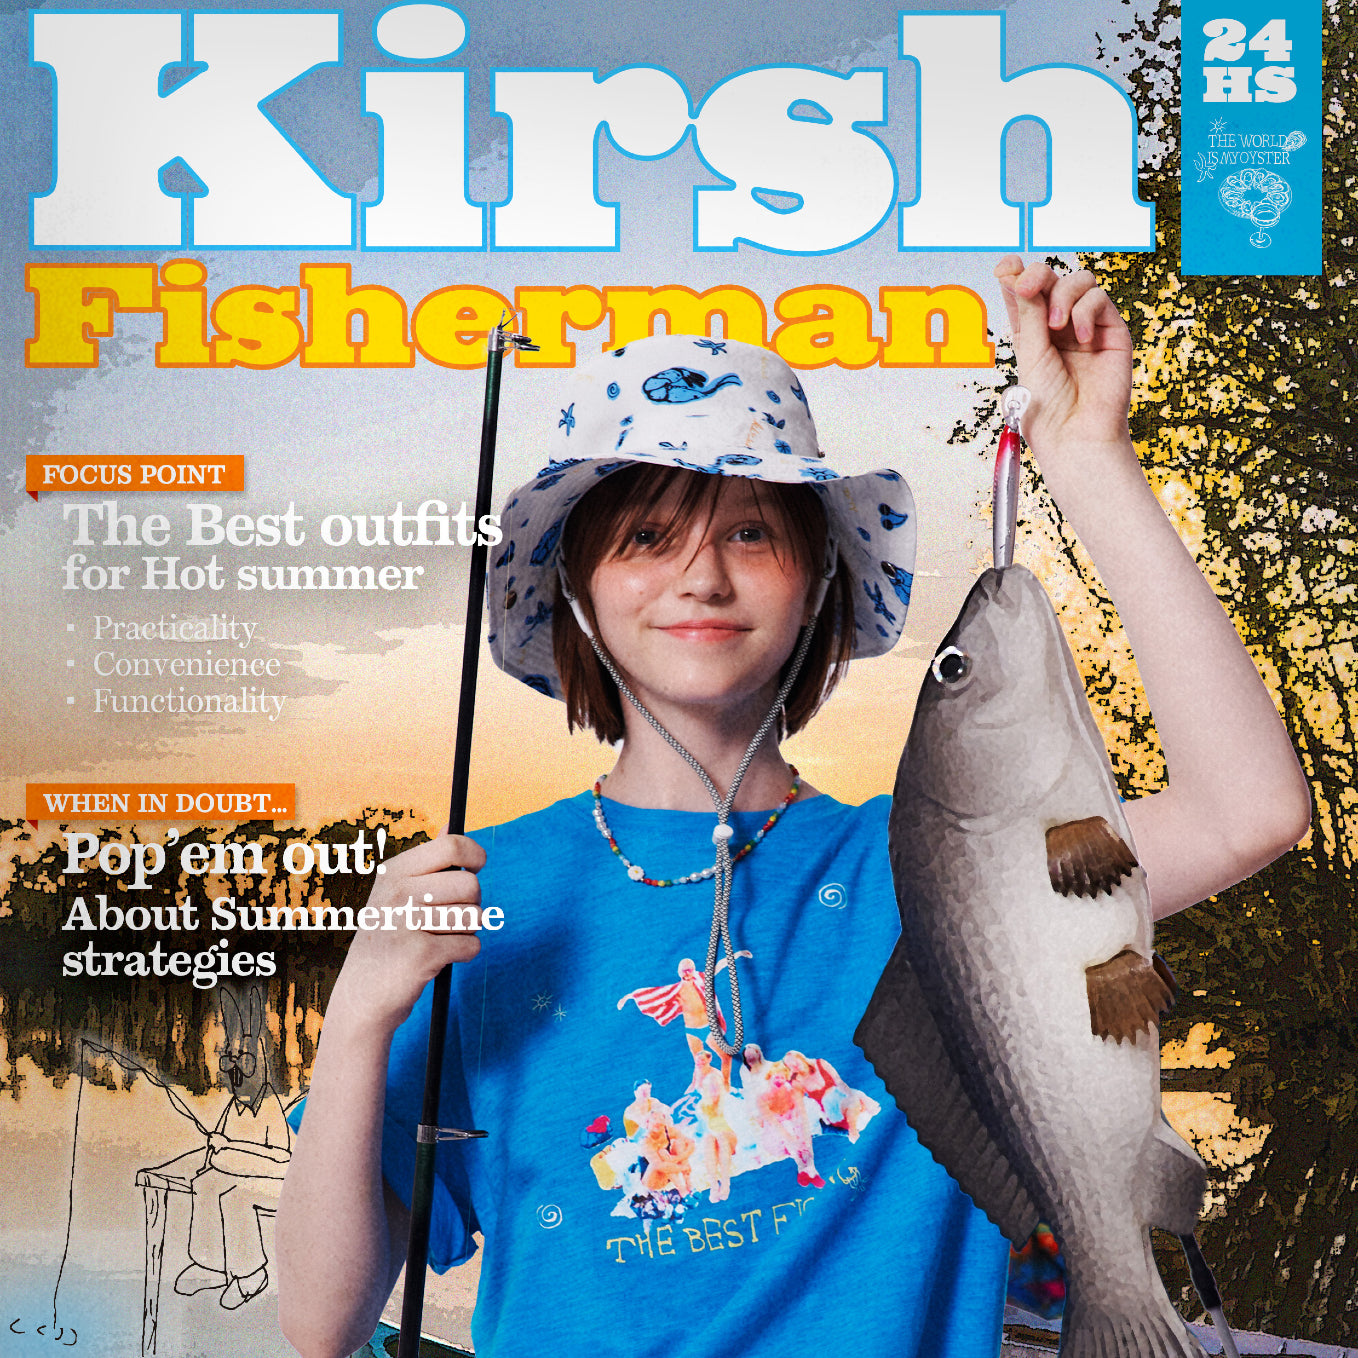 KIRSH Fisherman